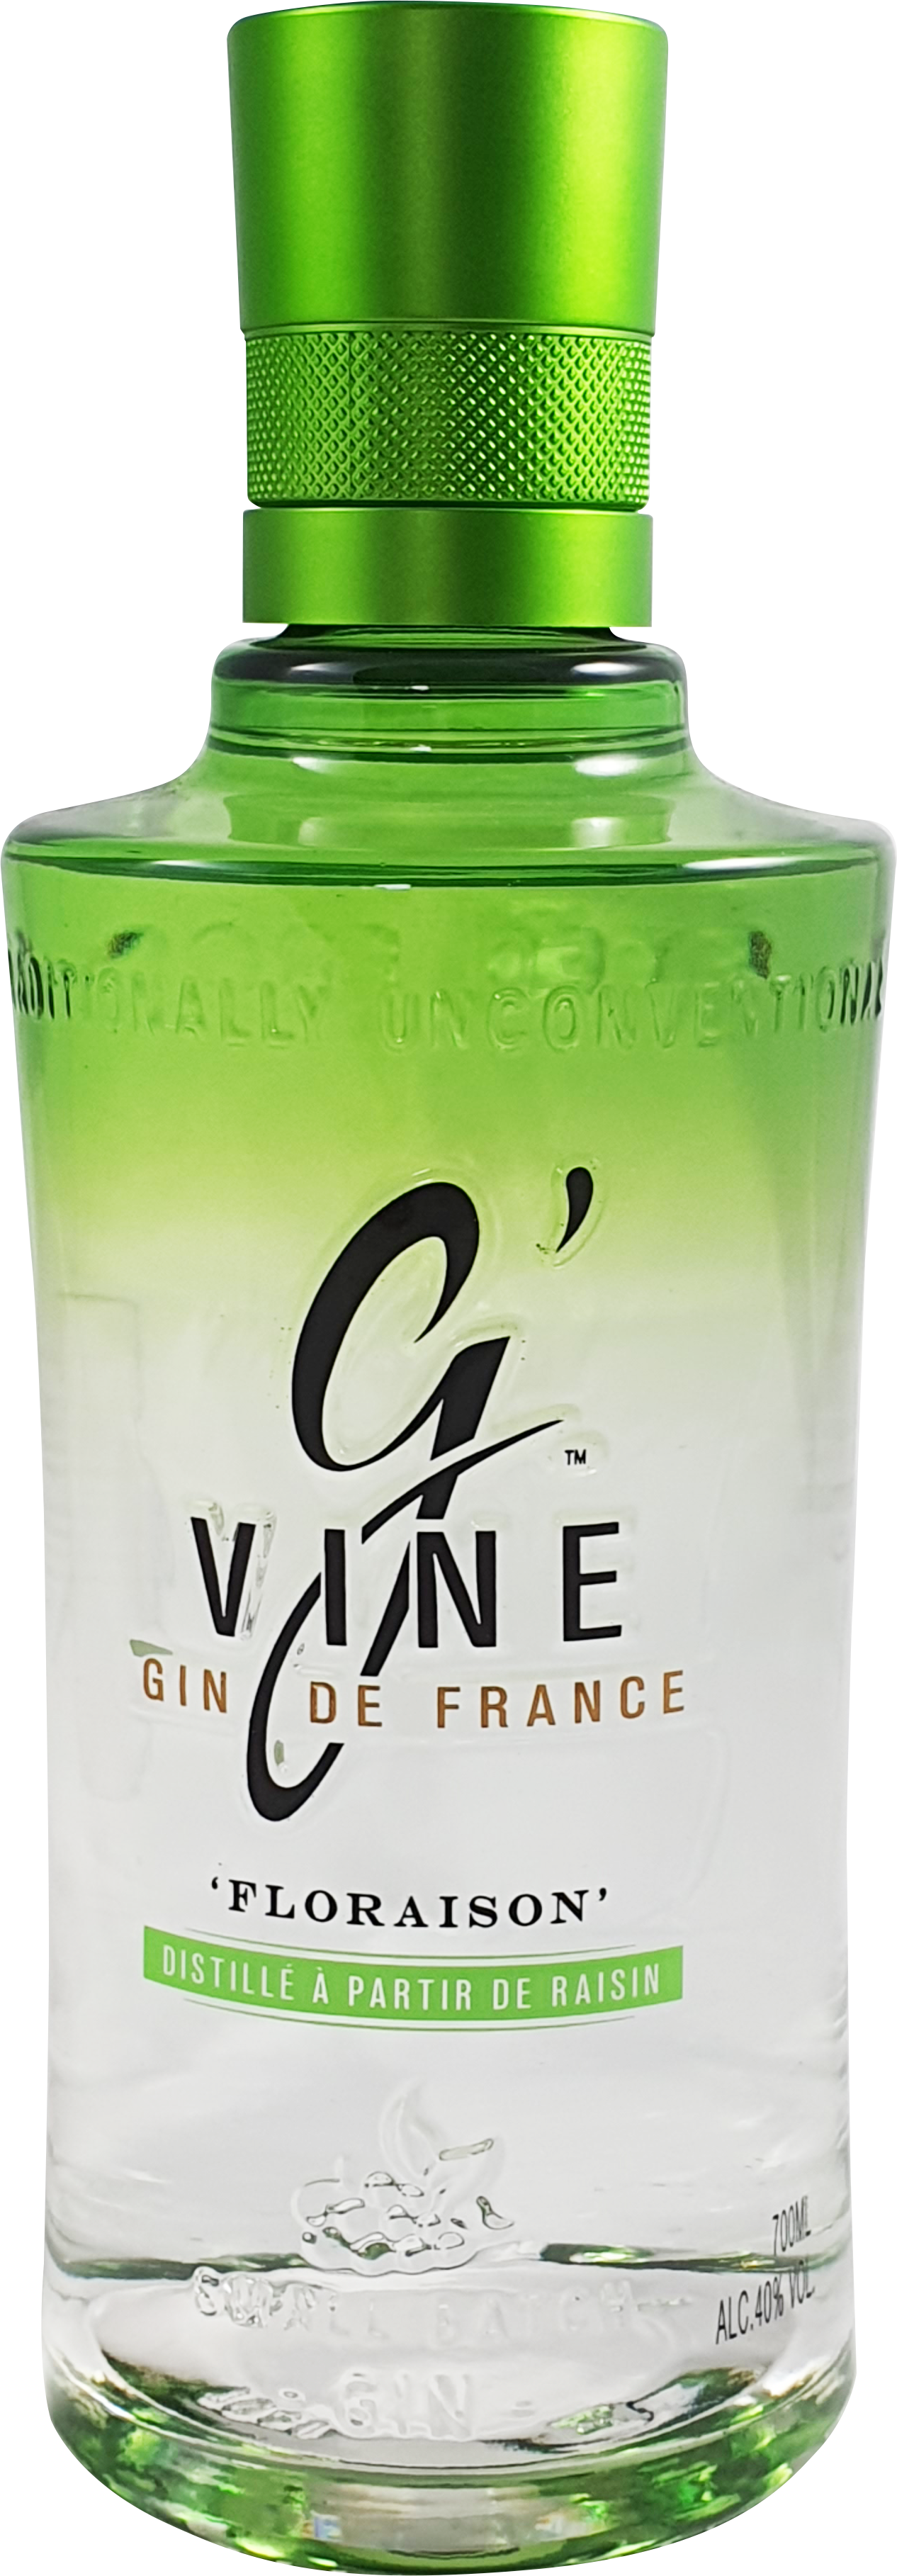 G-Vine FloraISOn Gin 40% 